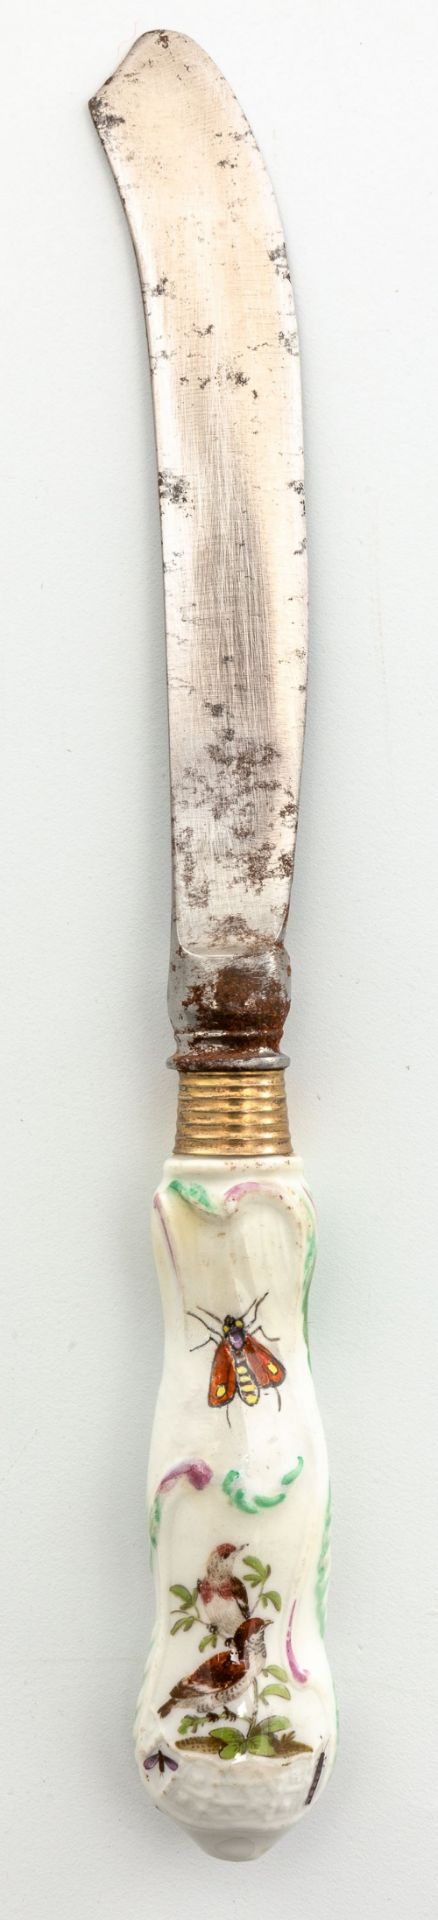 Messer für das Service mit Vögeln und Insekten für Friedrich den Großen Meissen, um 1760 - Bild 2 aus 2